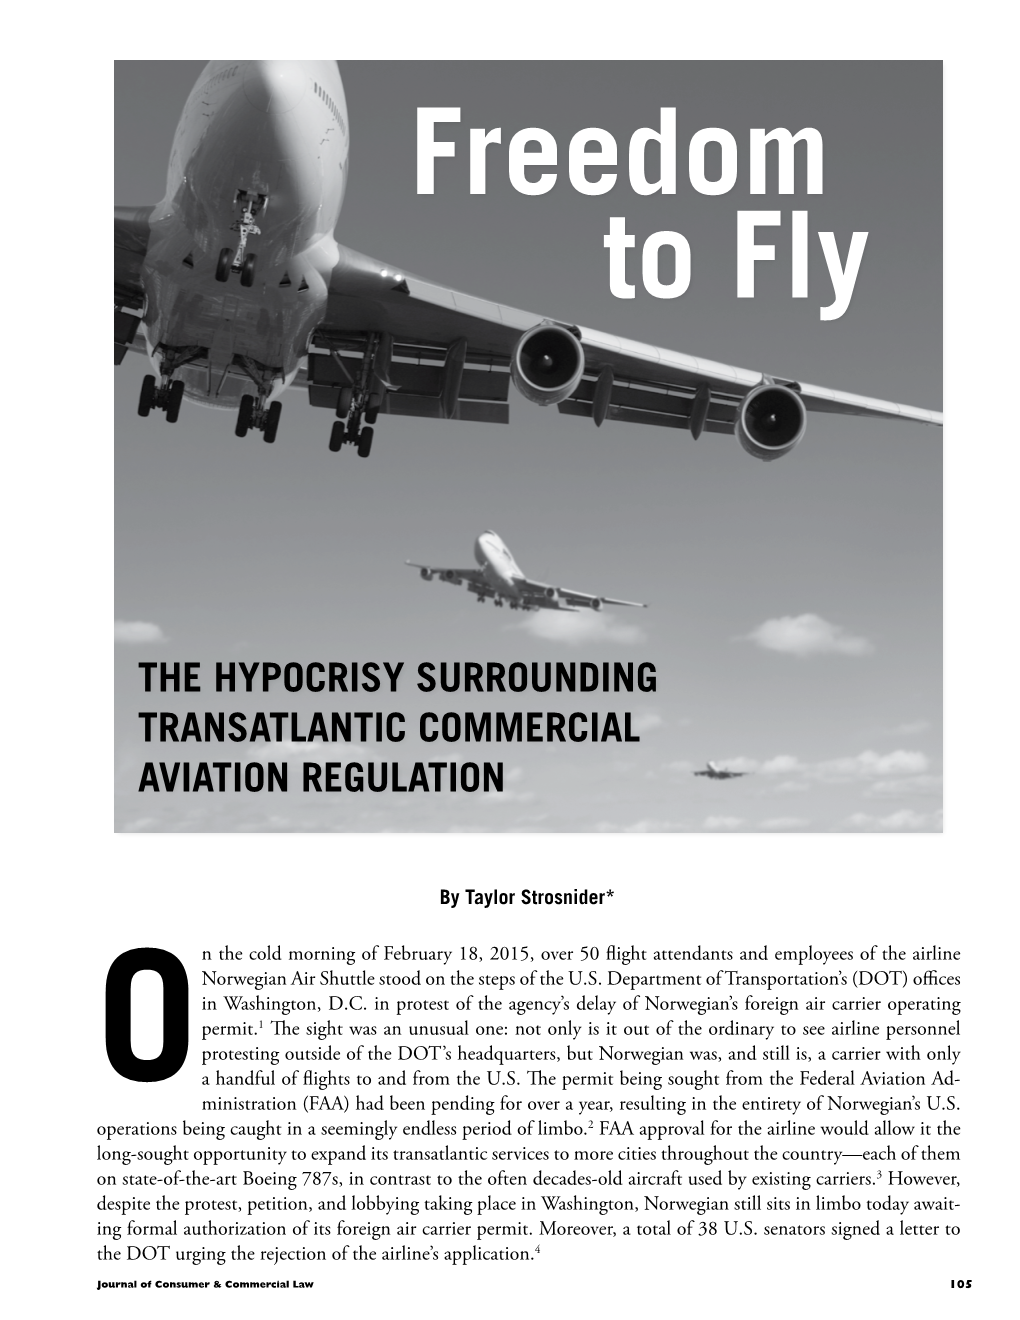 The Hypocrisy Surrounding Transatlantic Commercial Aviation Regulation